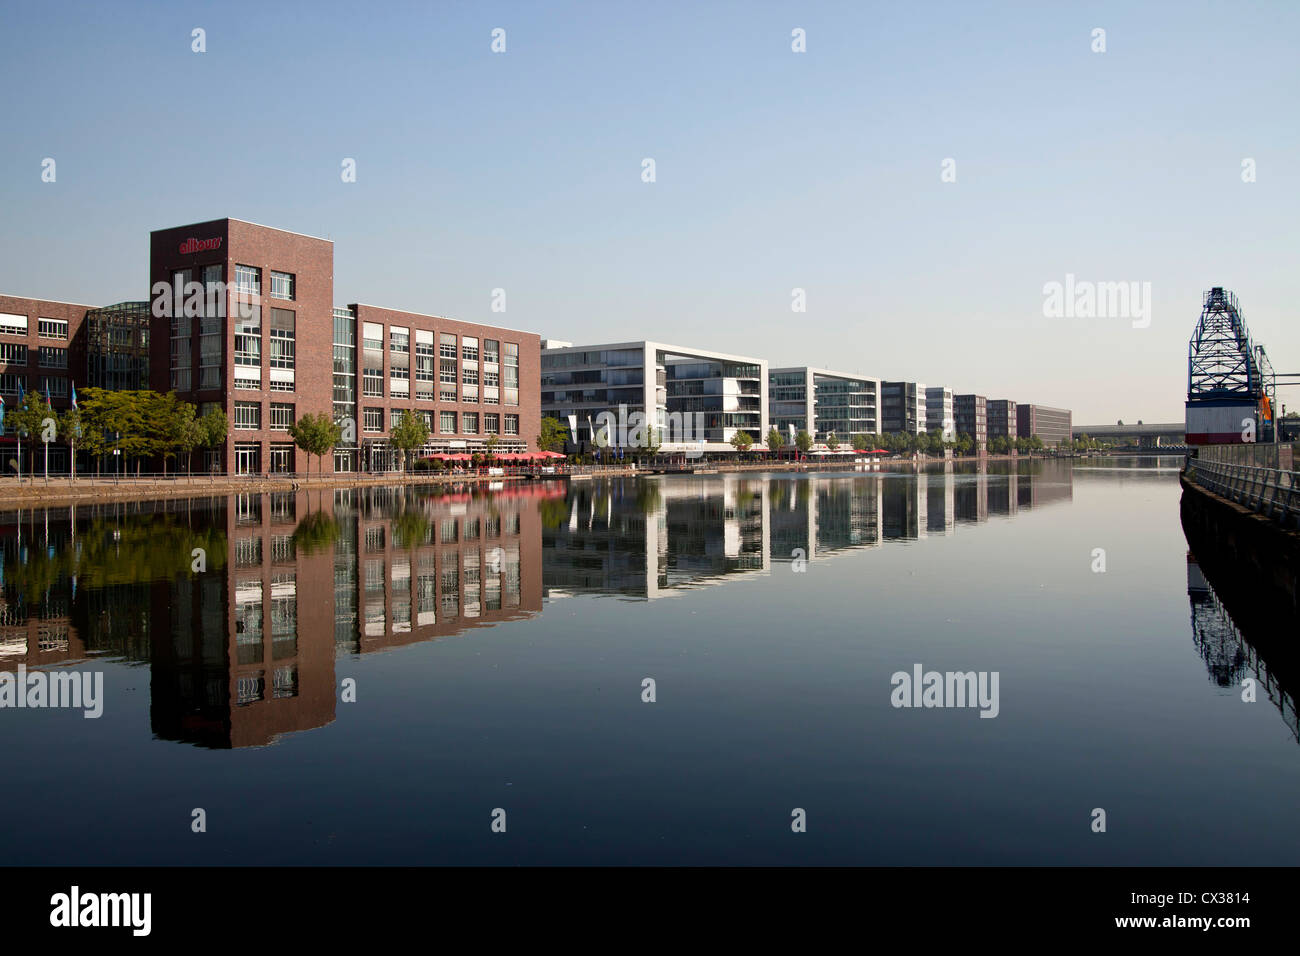 Duisburger Innenhafen mit dem Gebäude der deutschen Tour Operator Alltours, Duisburg, Nordrhein-Westfalen, Deutschland, Europa Stockfoto